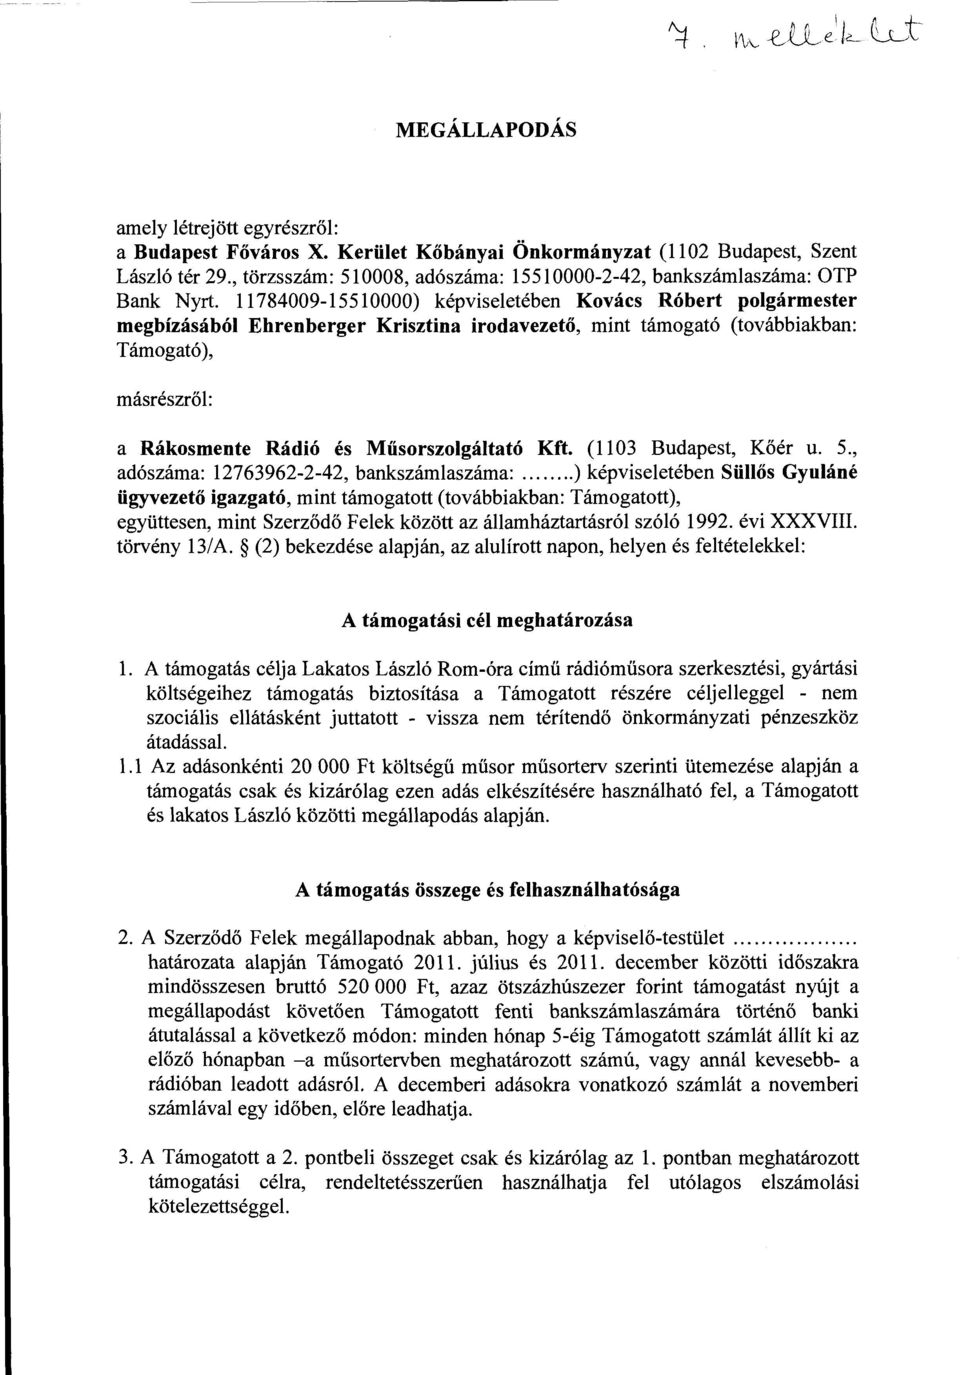 11784009-15510000) képviseletében Kovács Róbert polgármester megbízásából Ehrenberger Krisztina irodavezető, mint támogató (továbbiakban: Támogató), másrészről: a Rákosmente Rádió és Műsorszolgáltató